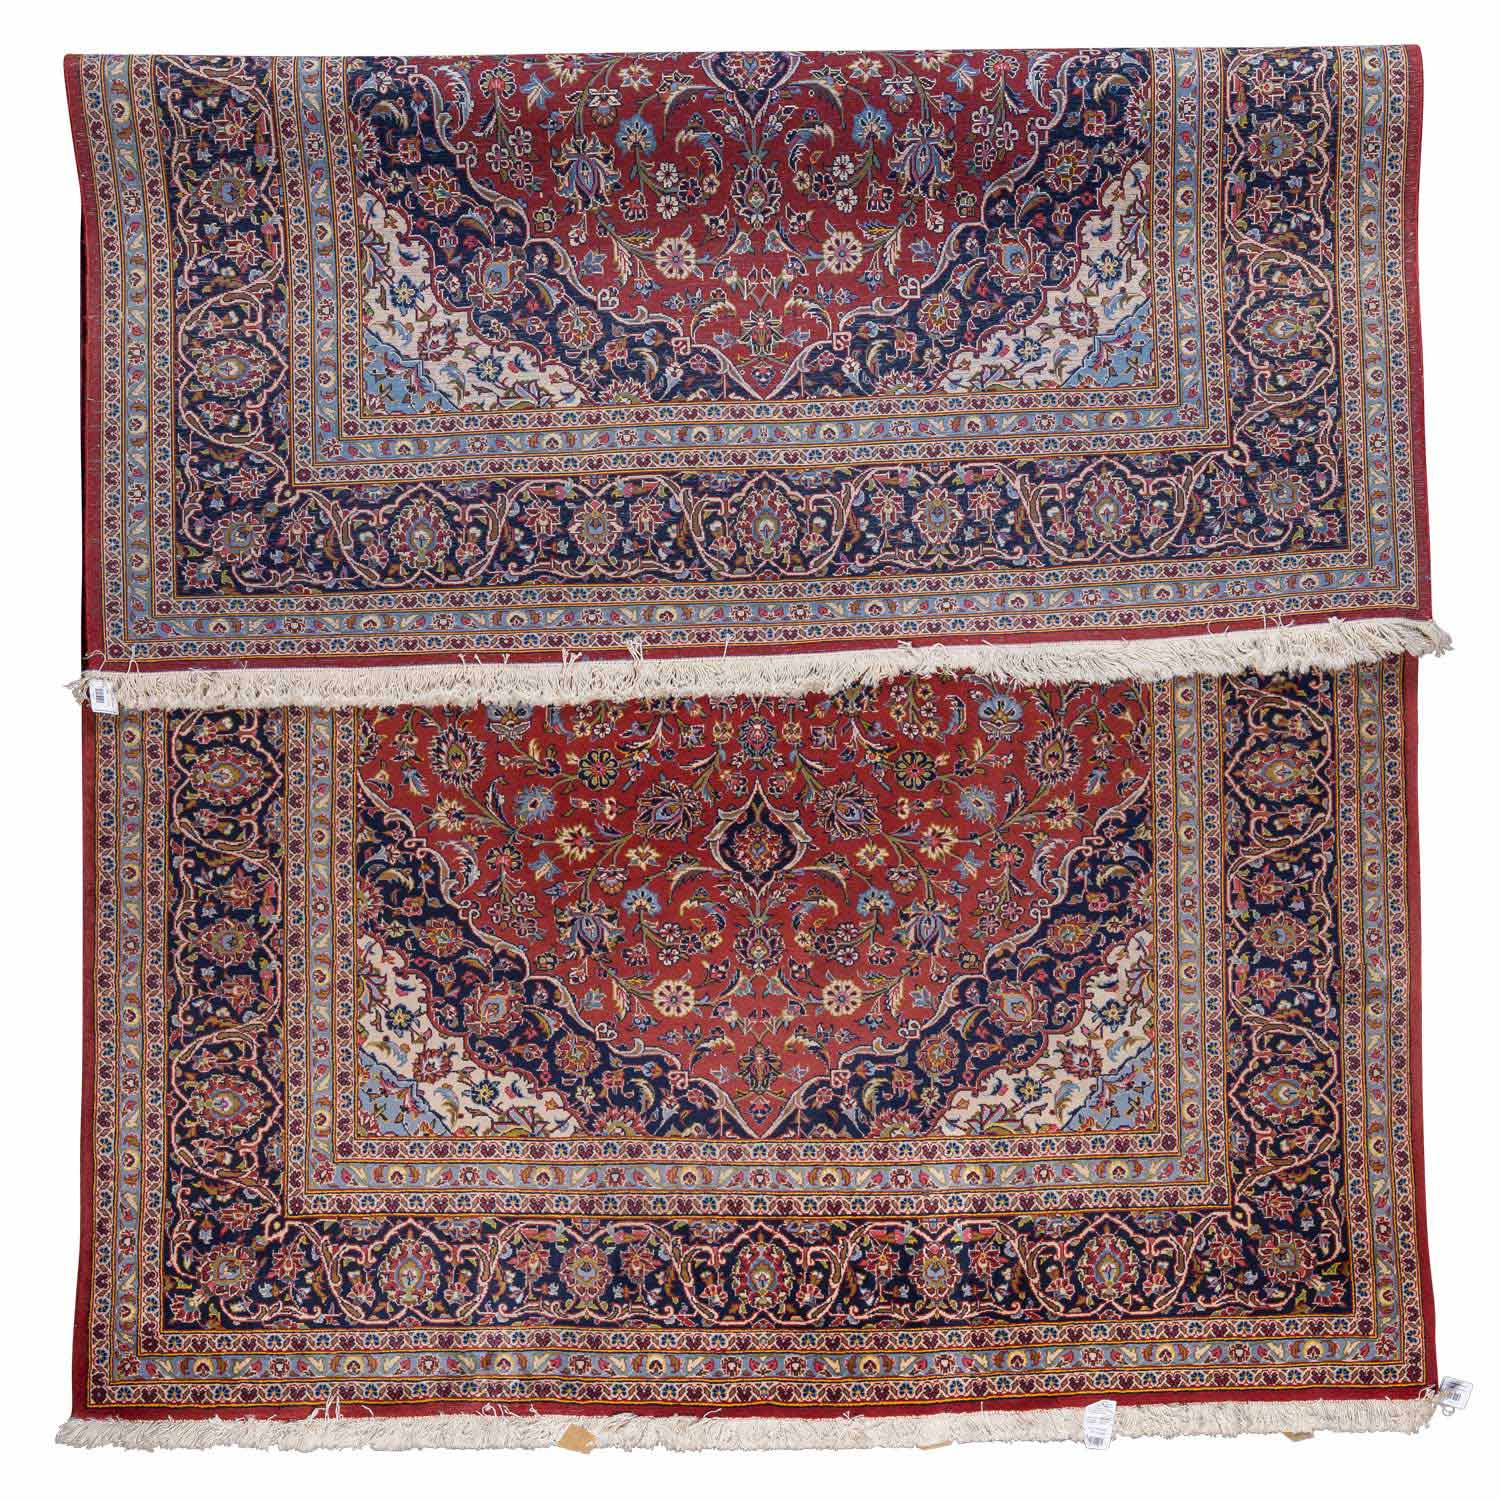 Orientteppich. KESCHAN/PERSIEN, 20. Jh., 325x205 cm. - Image 2 of 3